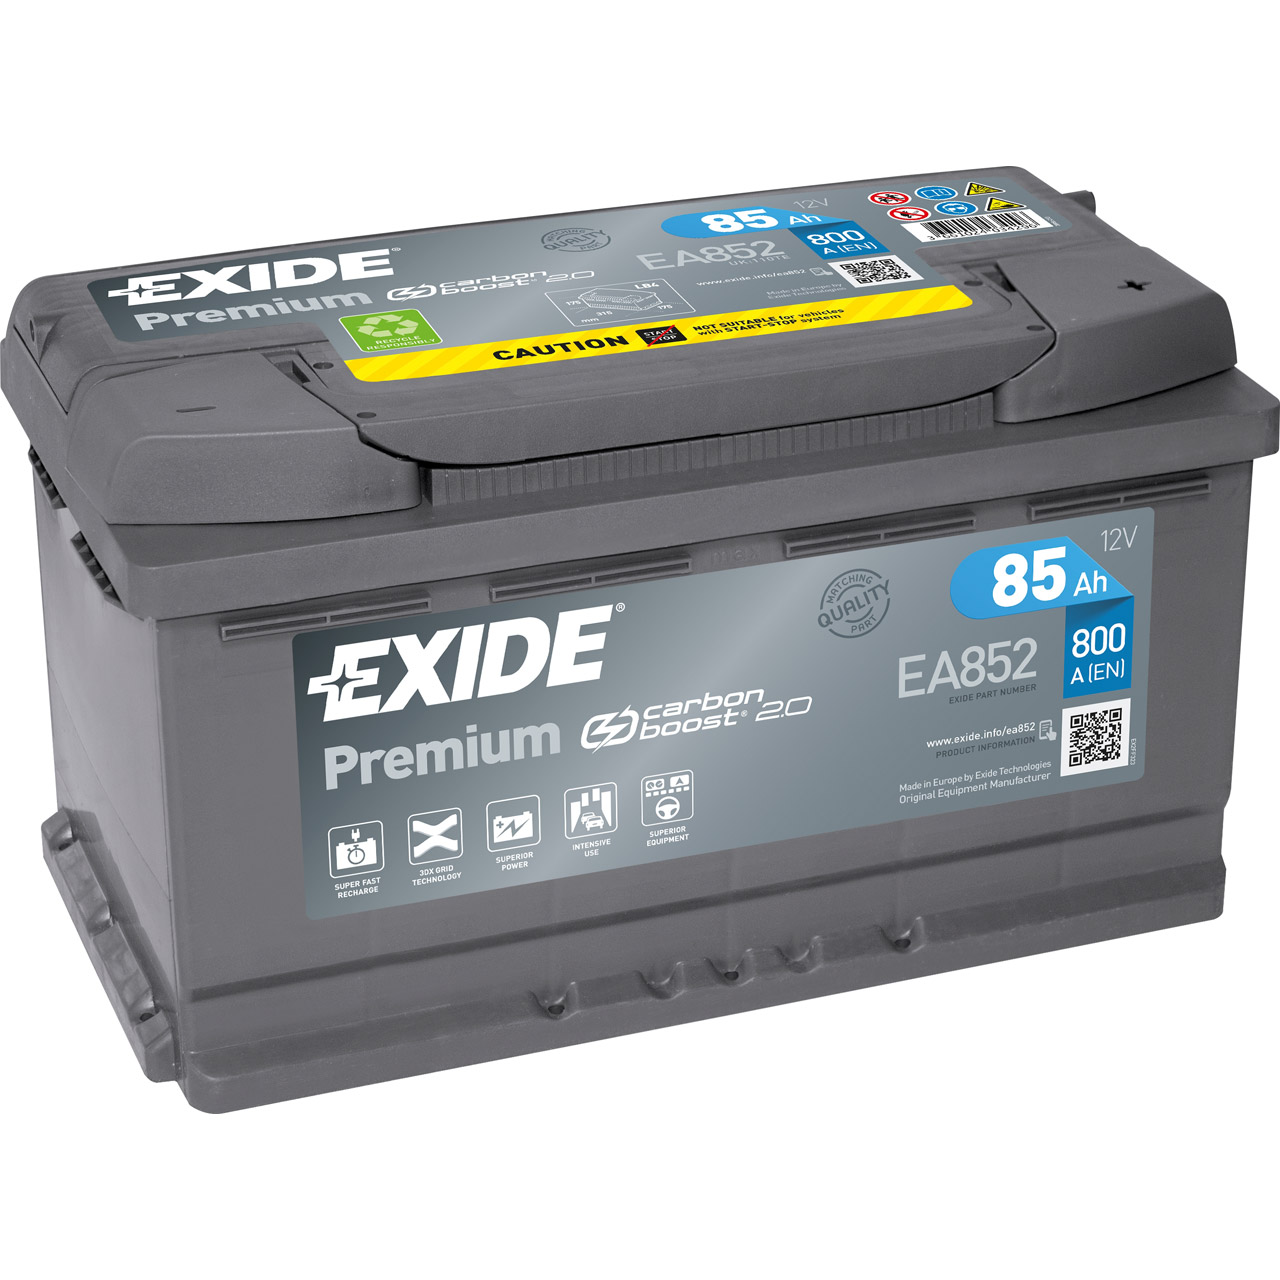 EXIDE EA852 PREMIUM Autobatterie Batterie Starterbatterie 12V 85Ah EN800A